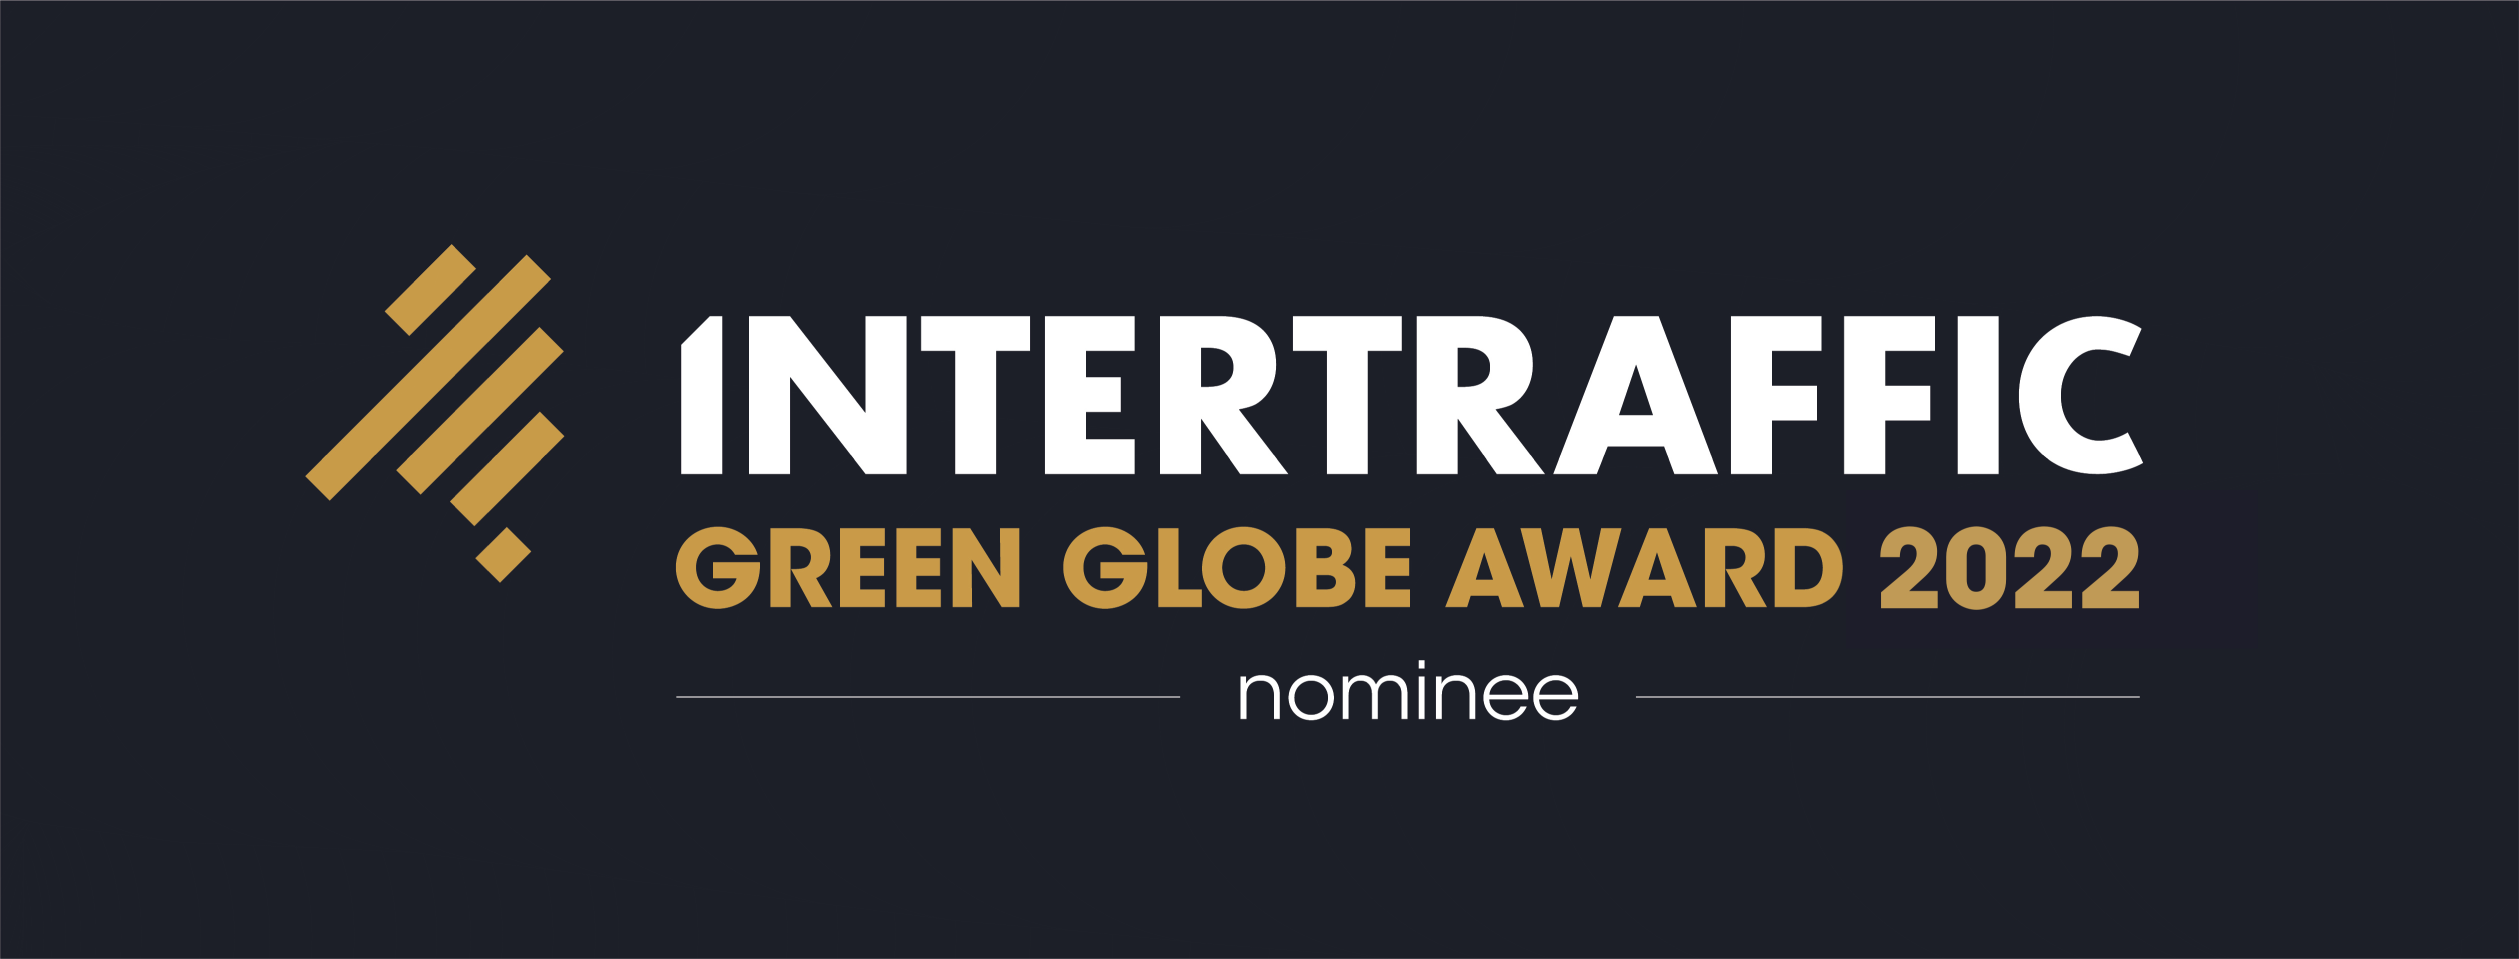 Intertraffic Green Globe Award 2022 Nominee